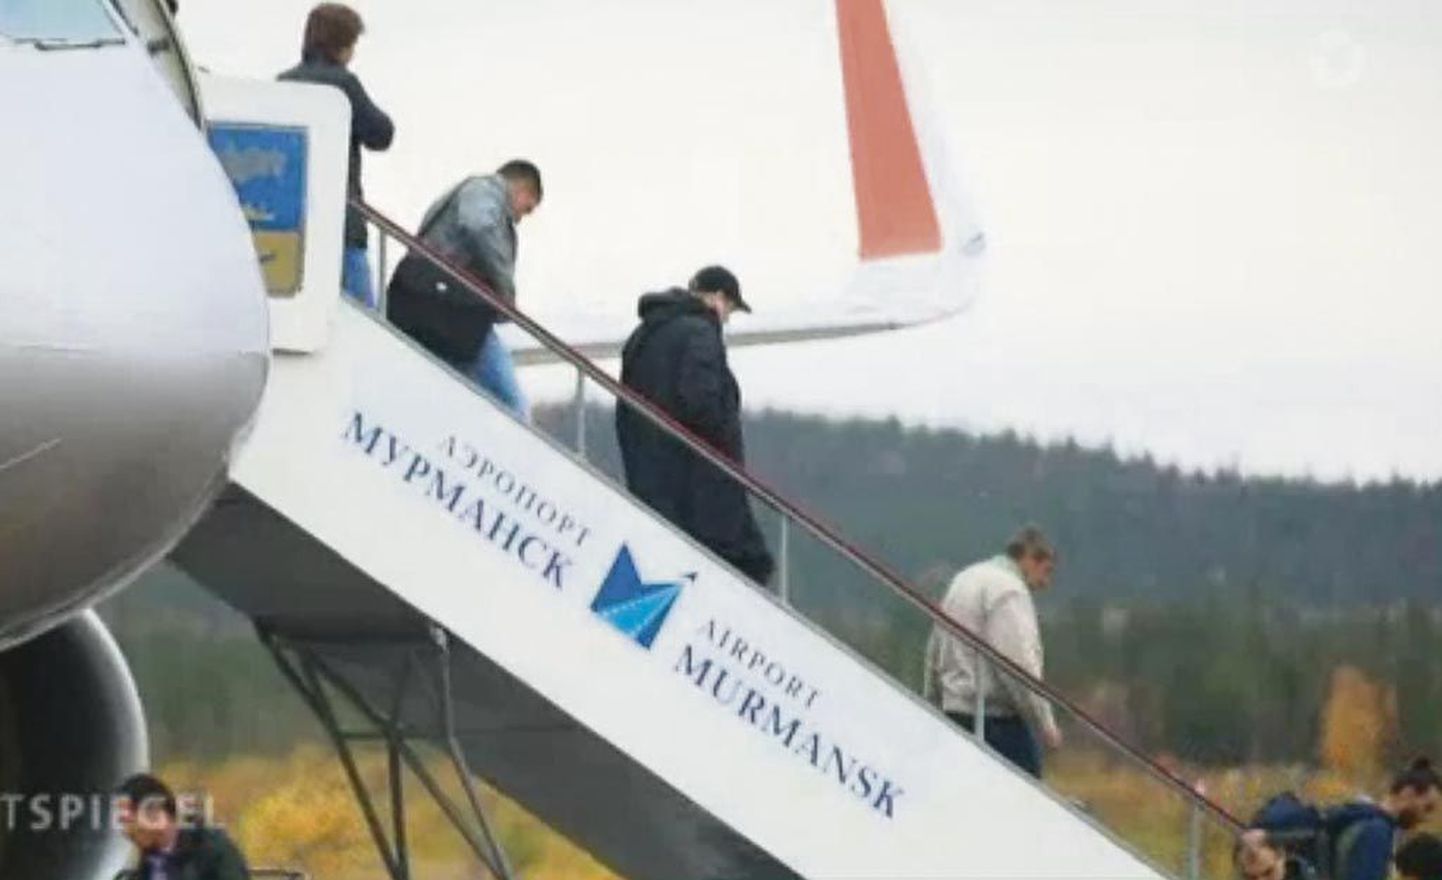 Põgenikud, kellel pole vaja karta ellujäämise pärast Vahemere lainetes, saabuvad Murmanskisse Moskvast mugavalt lennukiga. Venemaa kaudu Norrasse minejad on kaasmaalastest silmapaistvalt jõukamad.